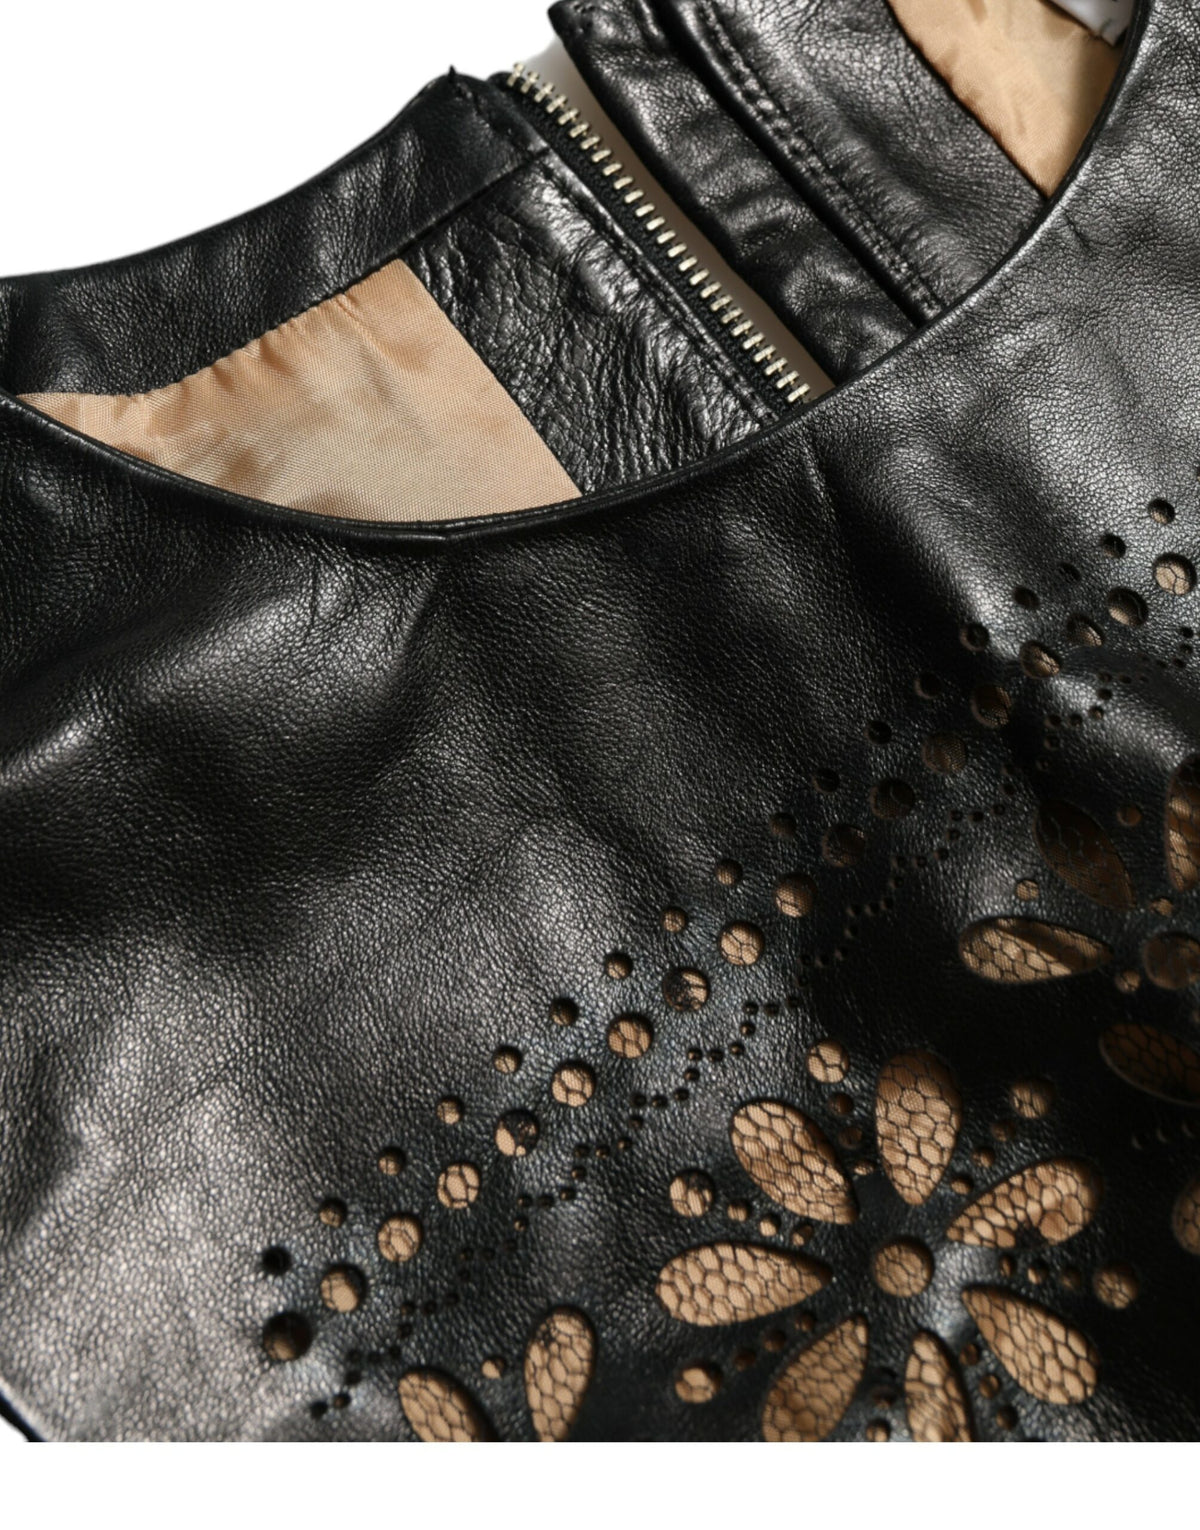 Valentino – Elegantes schwarzes Minikleid in A-Linie